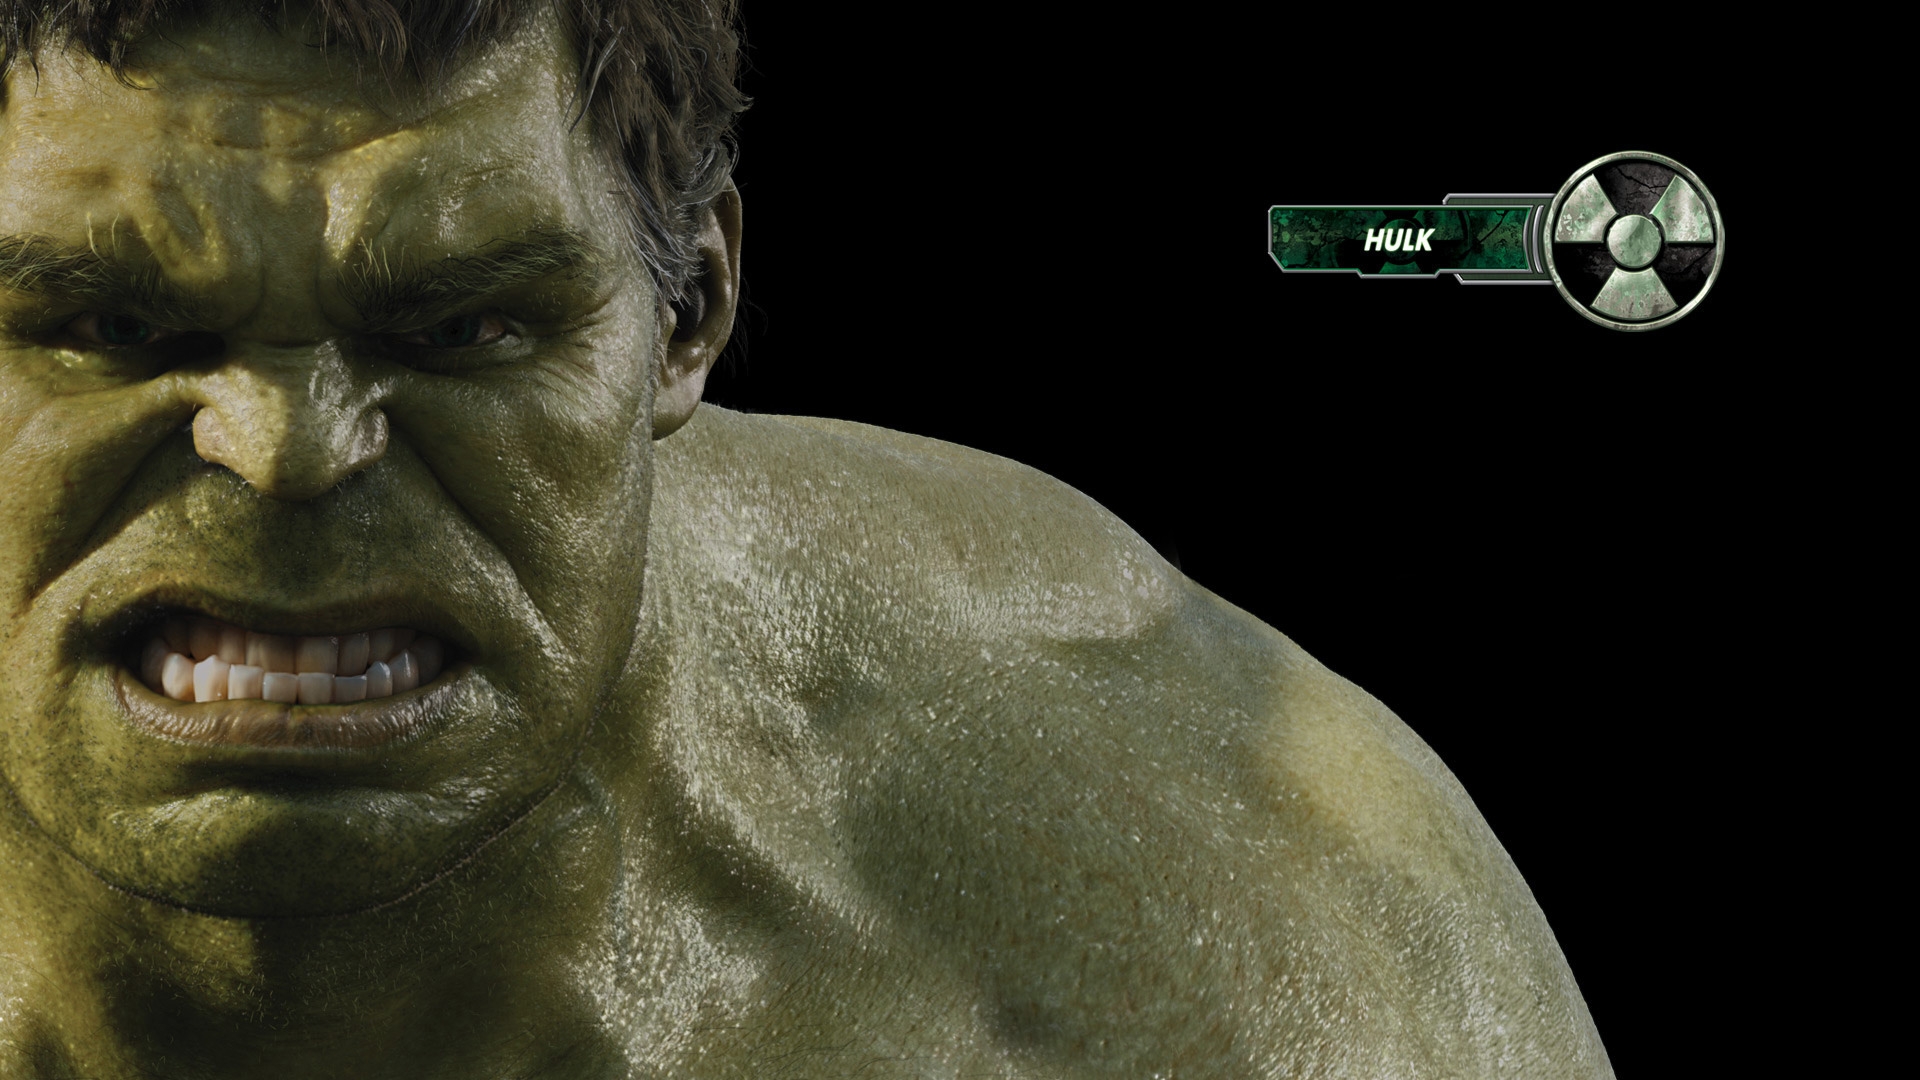 The Avengers Hulk for 1920 x 1080 HDTV 1080p resolution